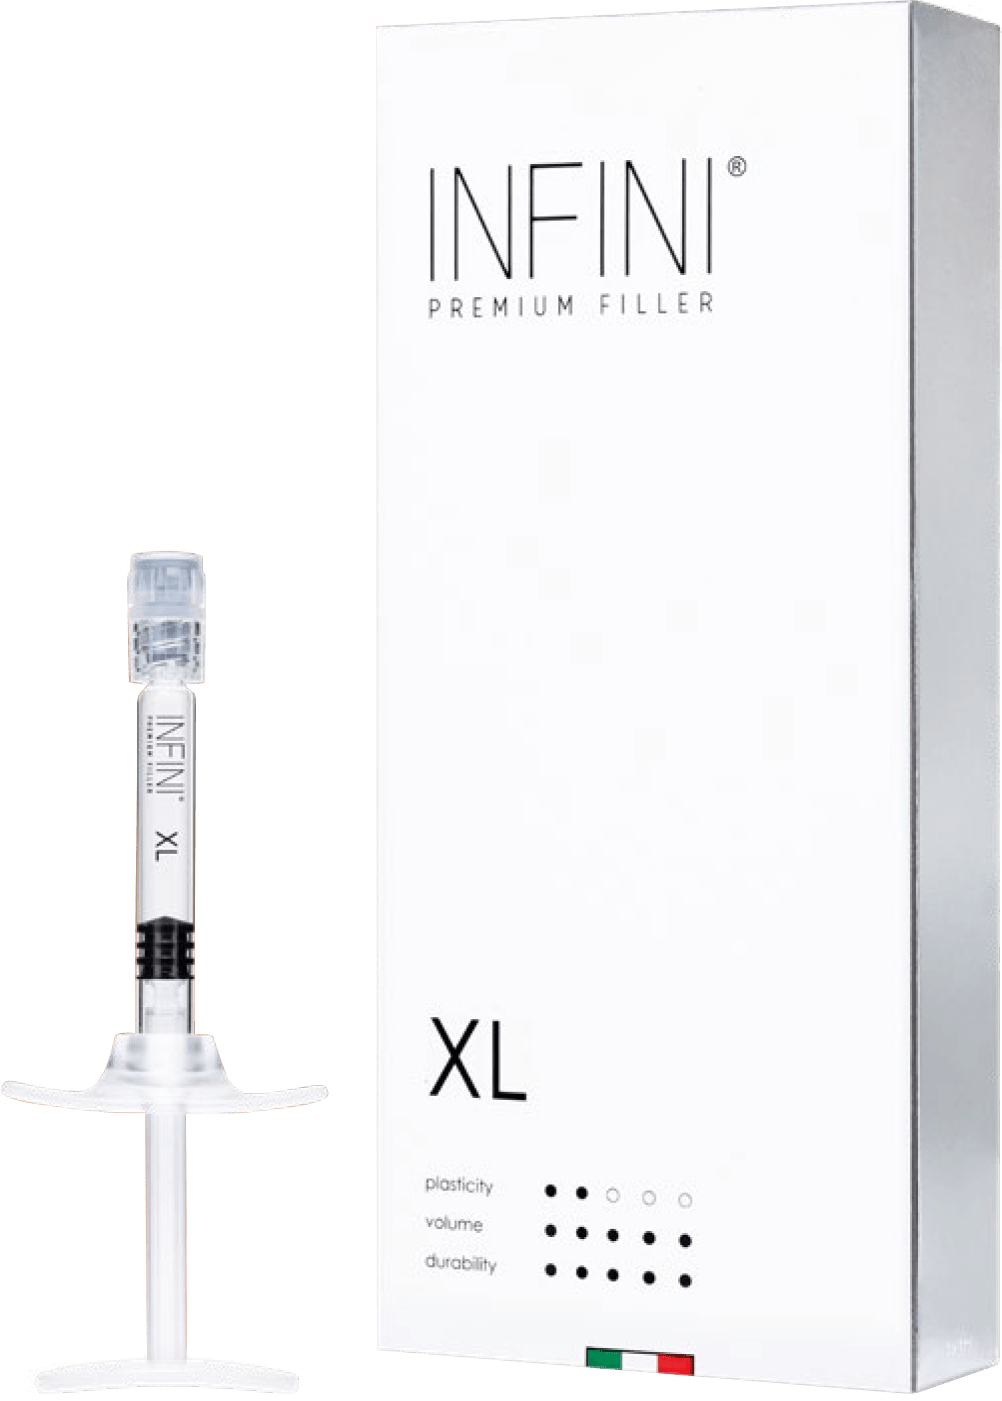 INFINI PREMIUM FILLER XL